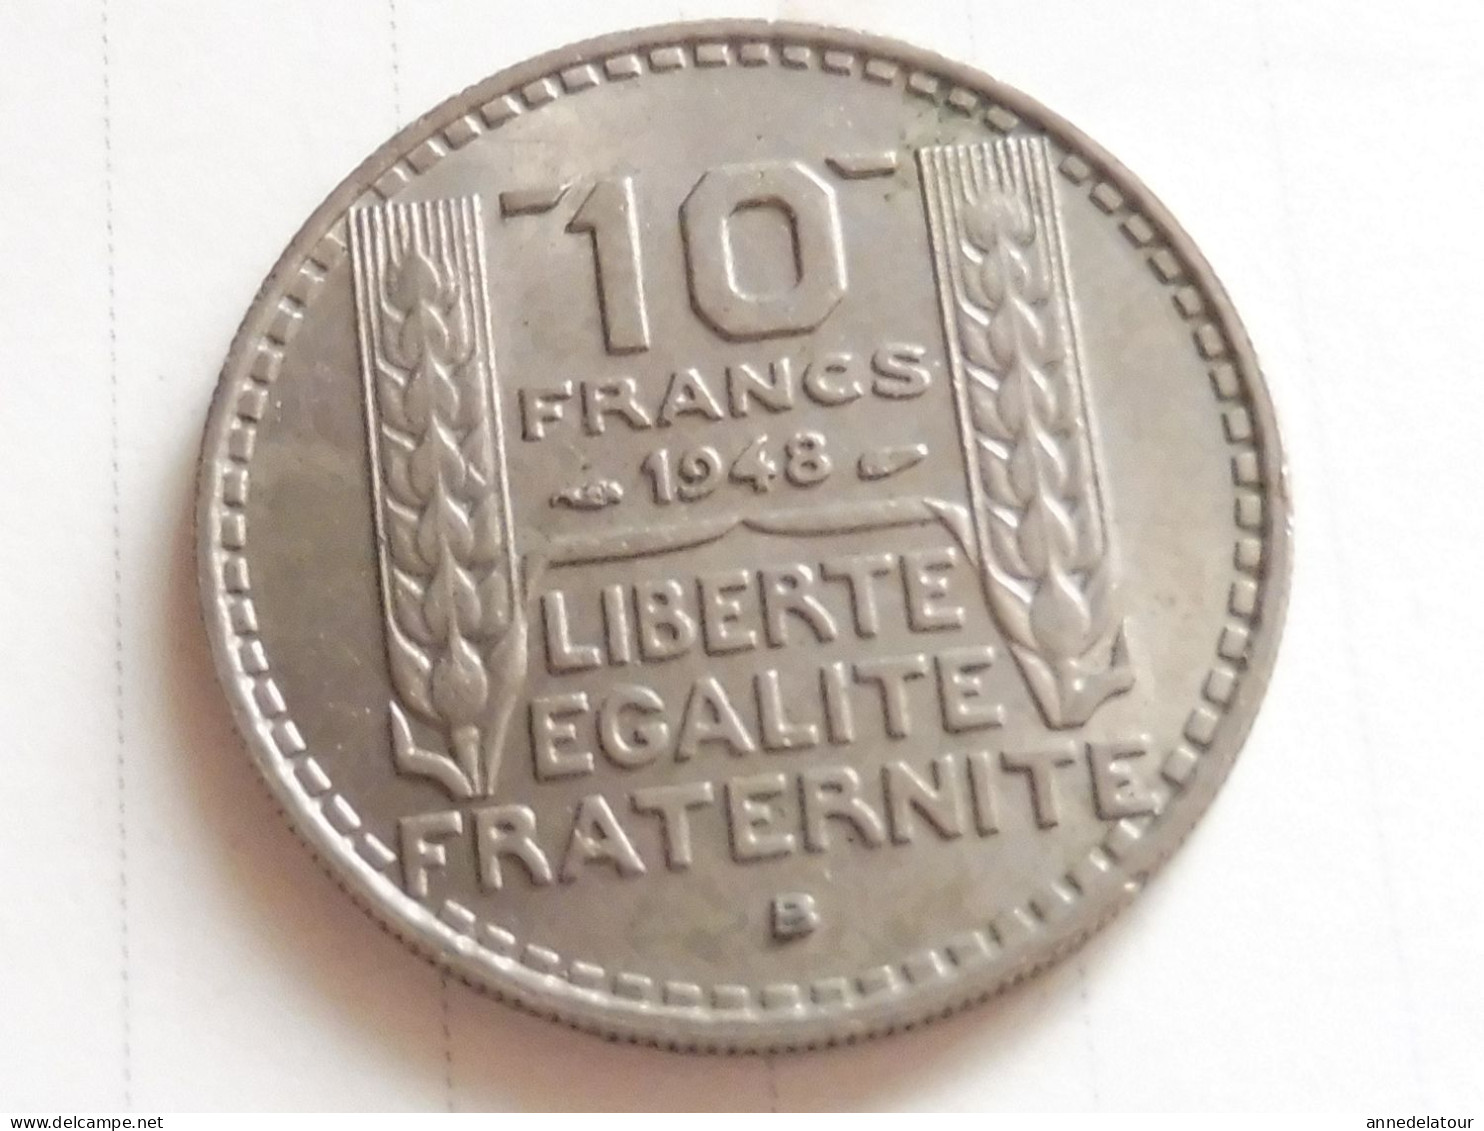 Année 1948  "B"  pièce  de  10 francs   (Turin ) (République Française)   en alliage nickel